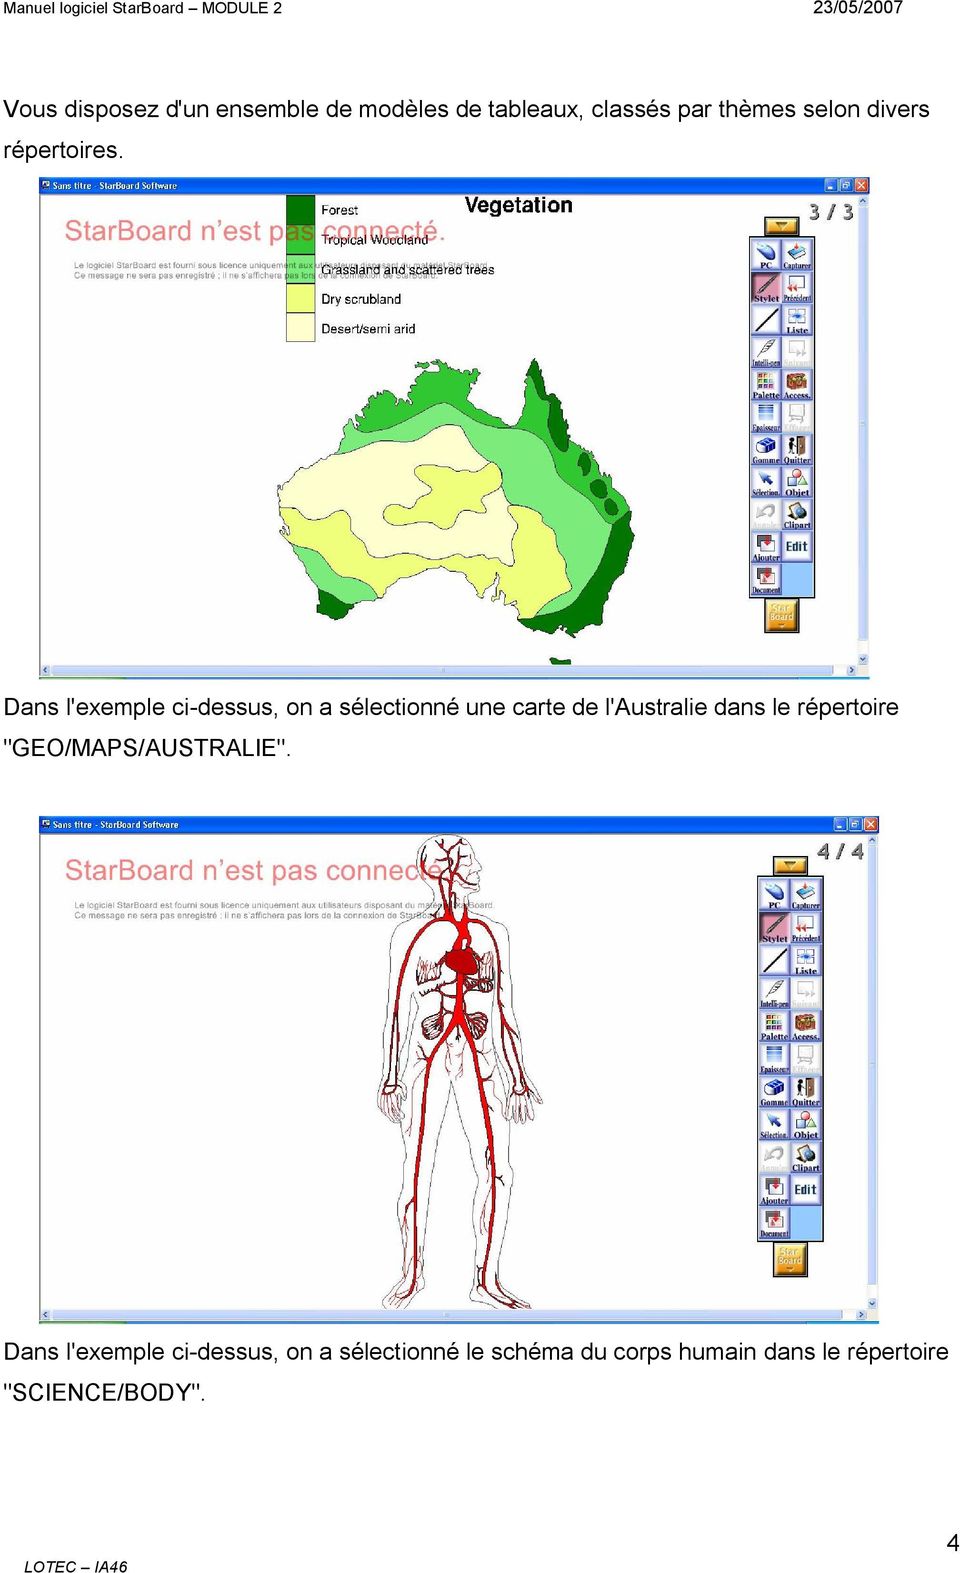 Dans l'exemple ci-dessus, on a sélectionné une carte de l'australie dans le